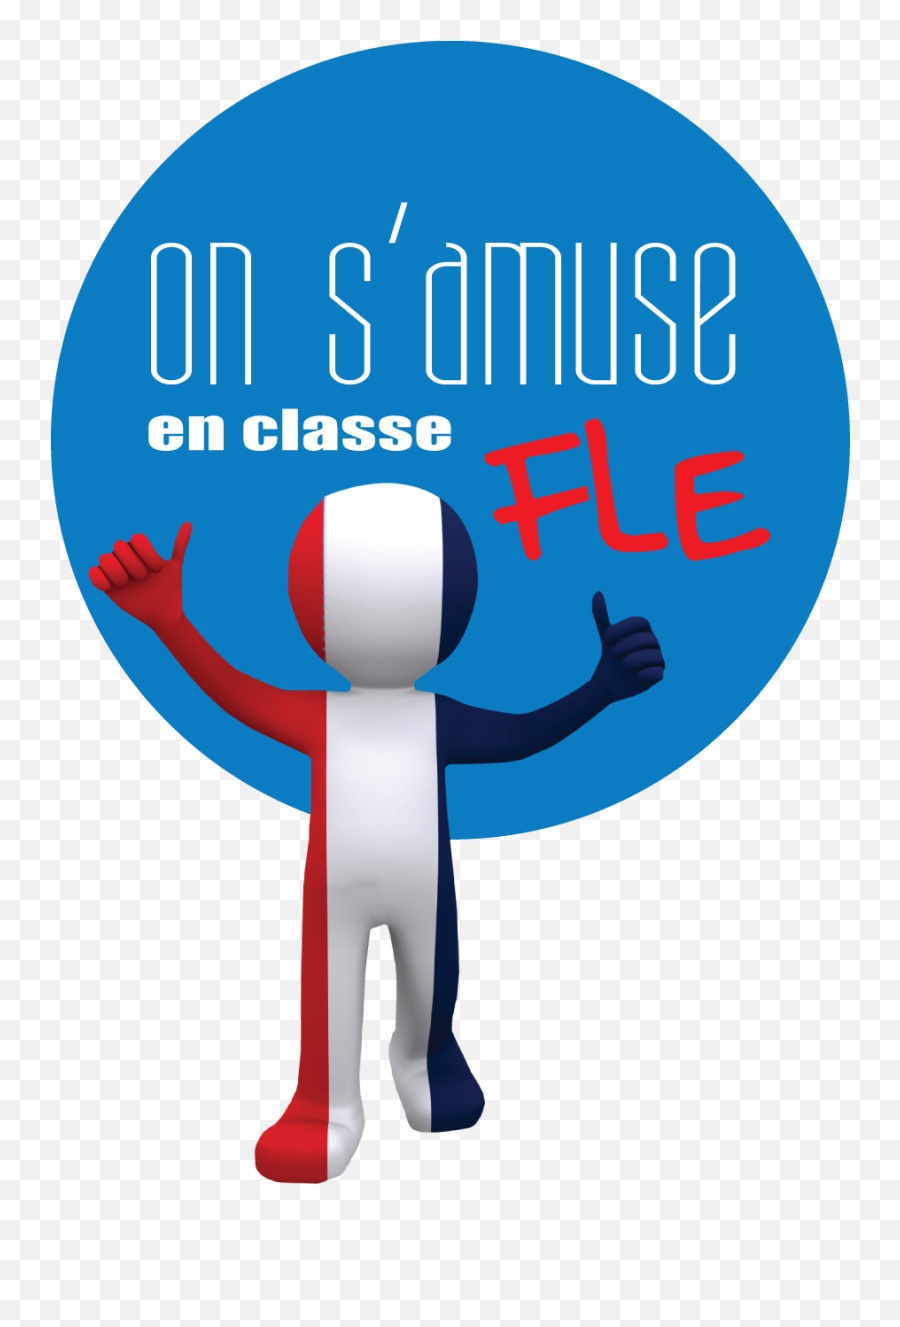 Le Cours De Fle - Alliance Française Du0027armenia Alter Ego A2 Emoji,Exprimer Des Emotions Fle B1